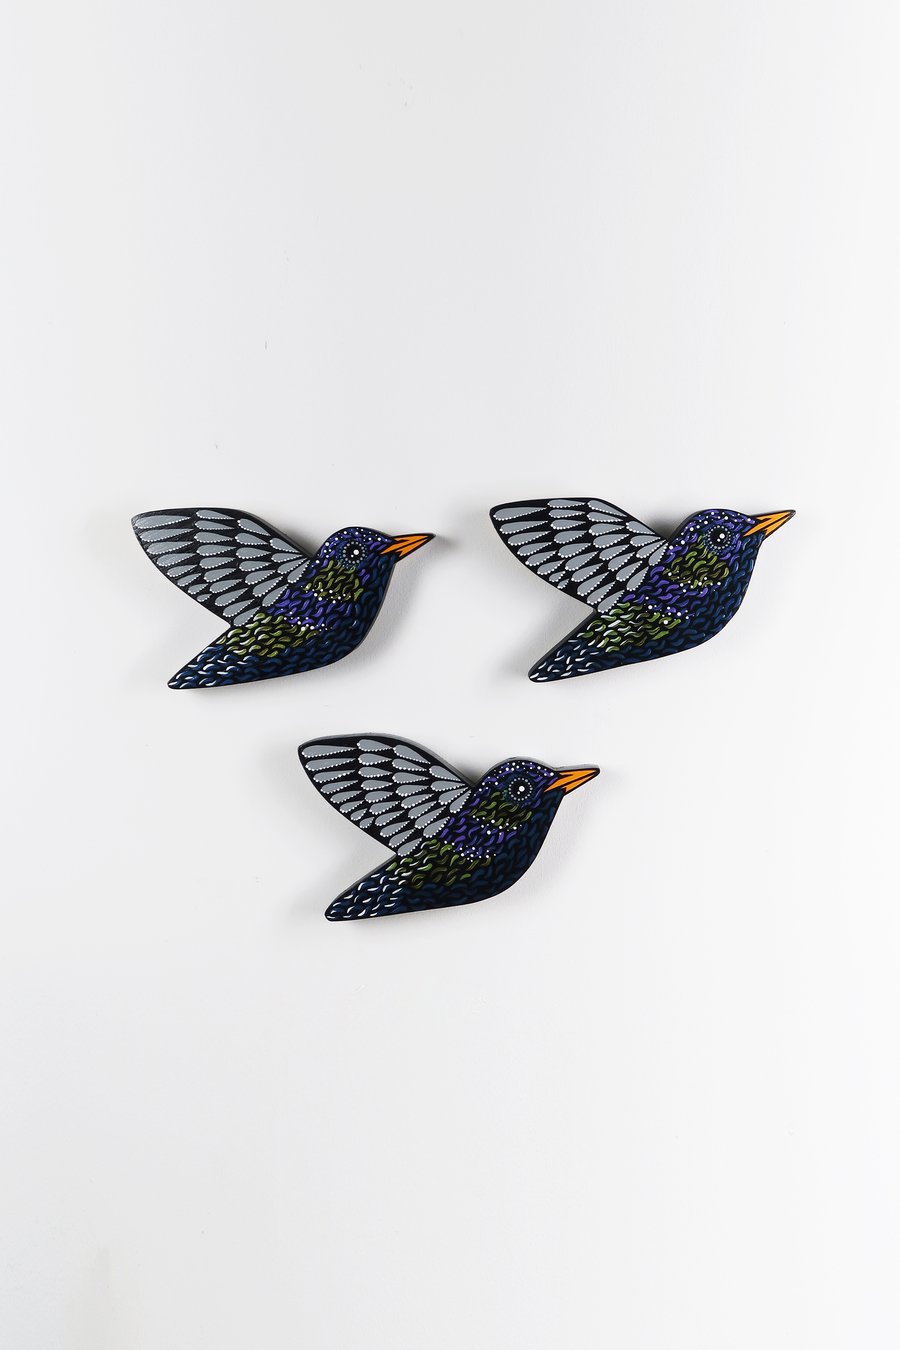 Starling wall art, set of 3 birds, garden bird ... - Folksy